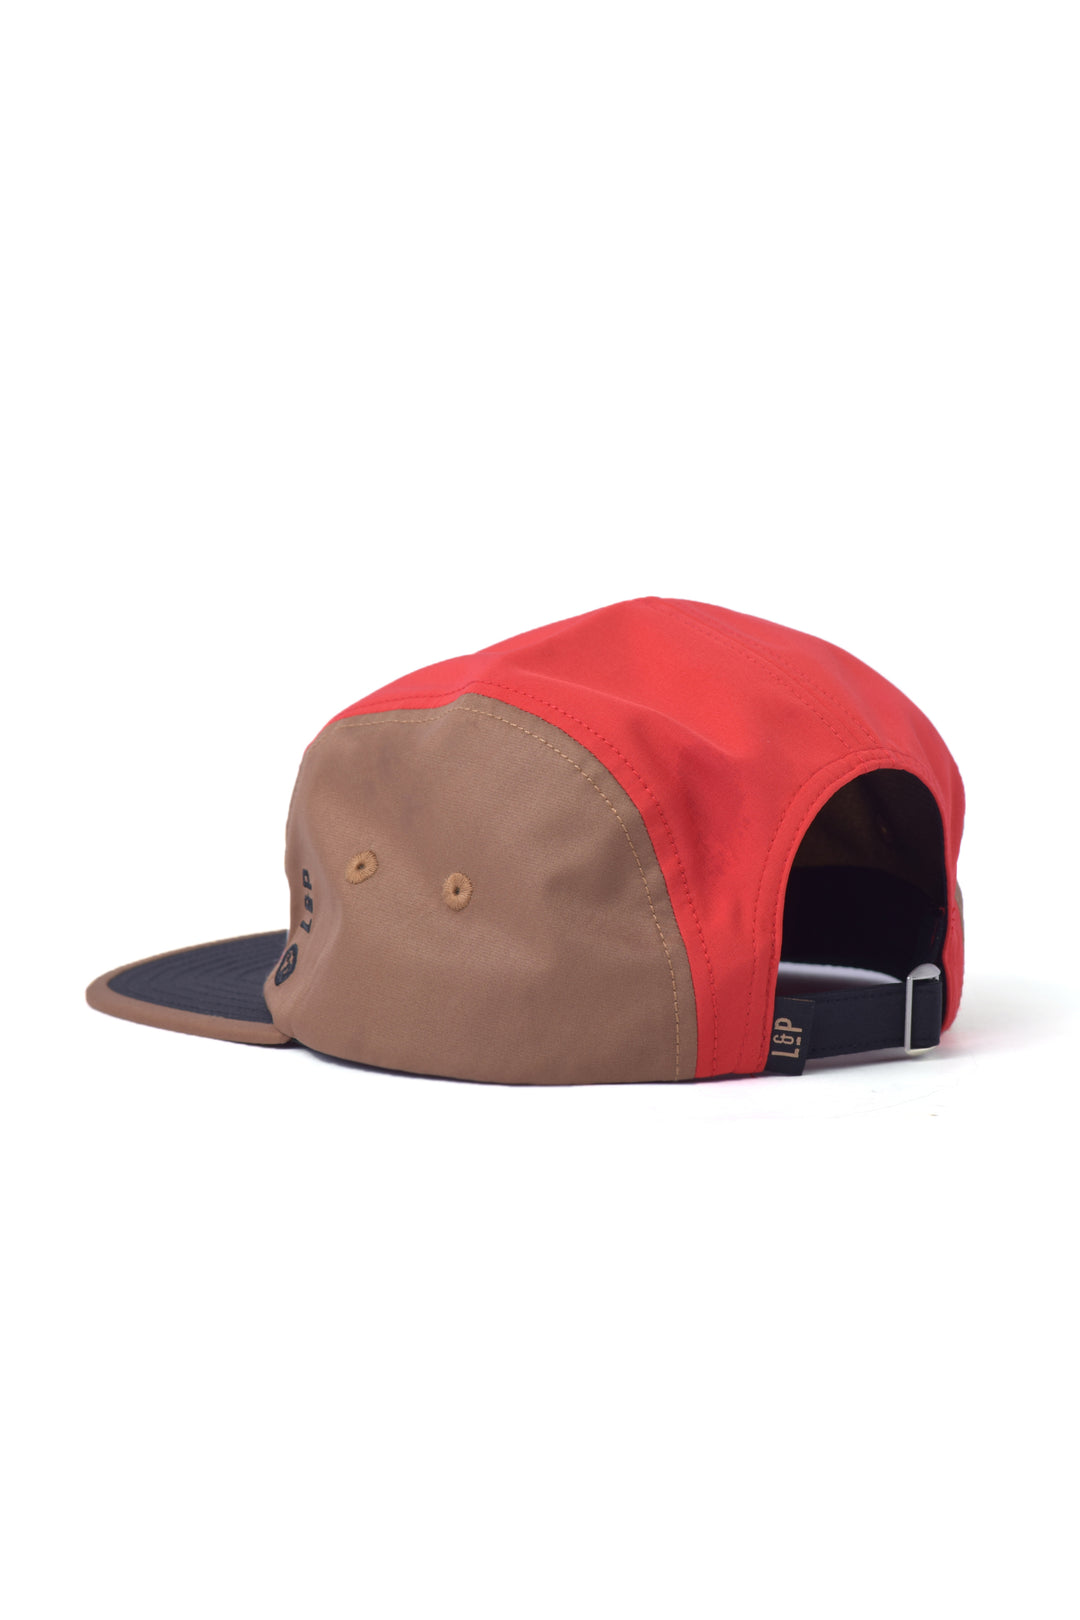 Casquette camper hat (édition spéciale 24h Tremblant 2.0)